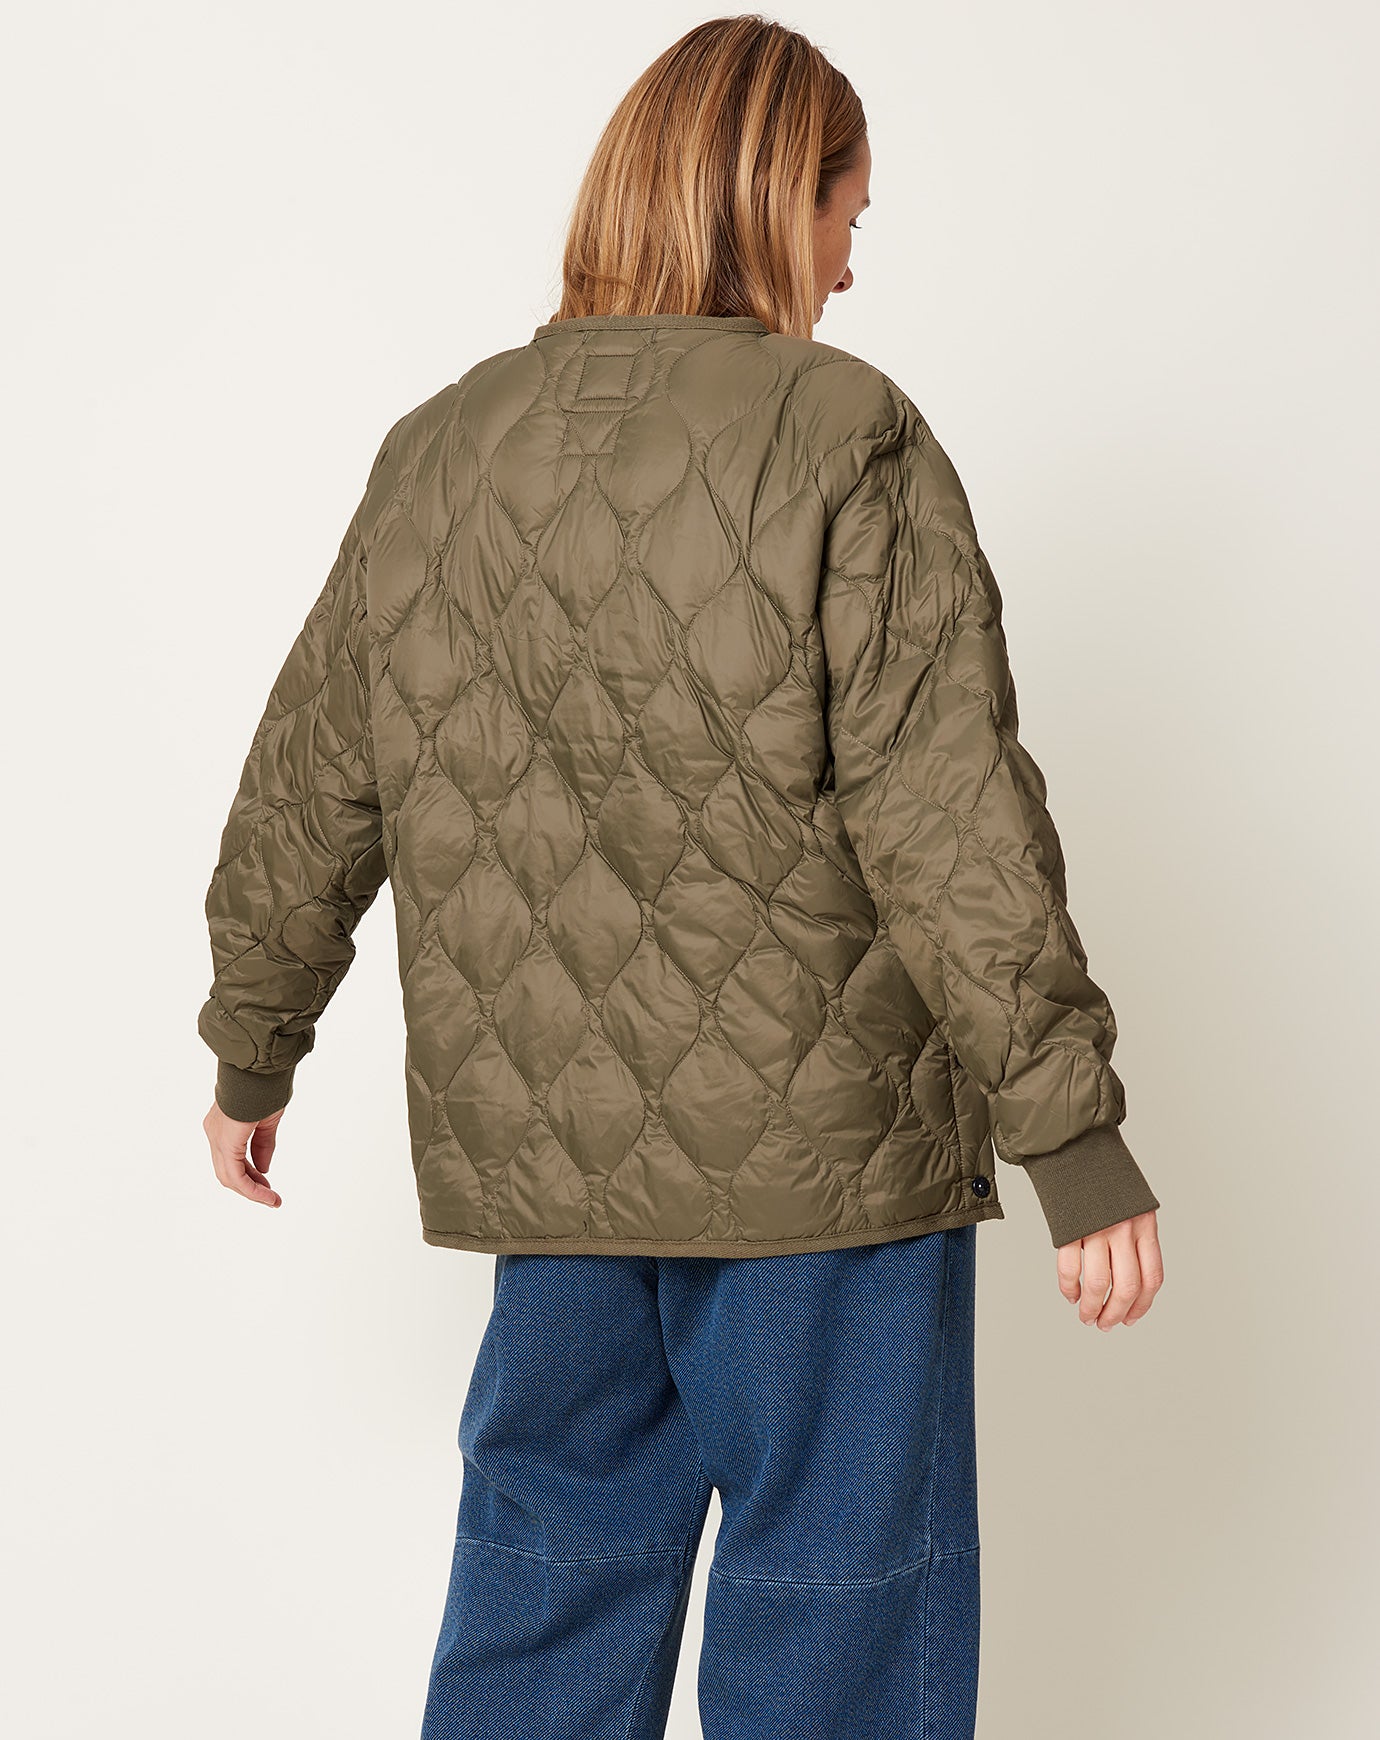 dip Cotton Nylon Military Jacket XL サイズ-